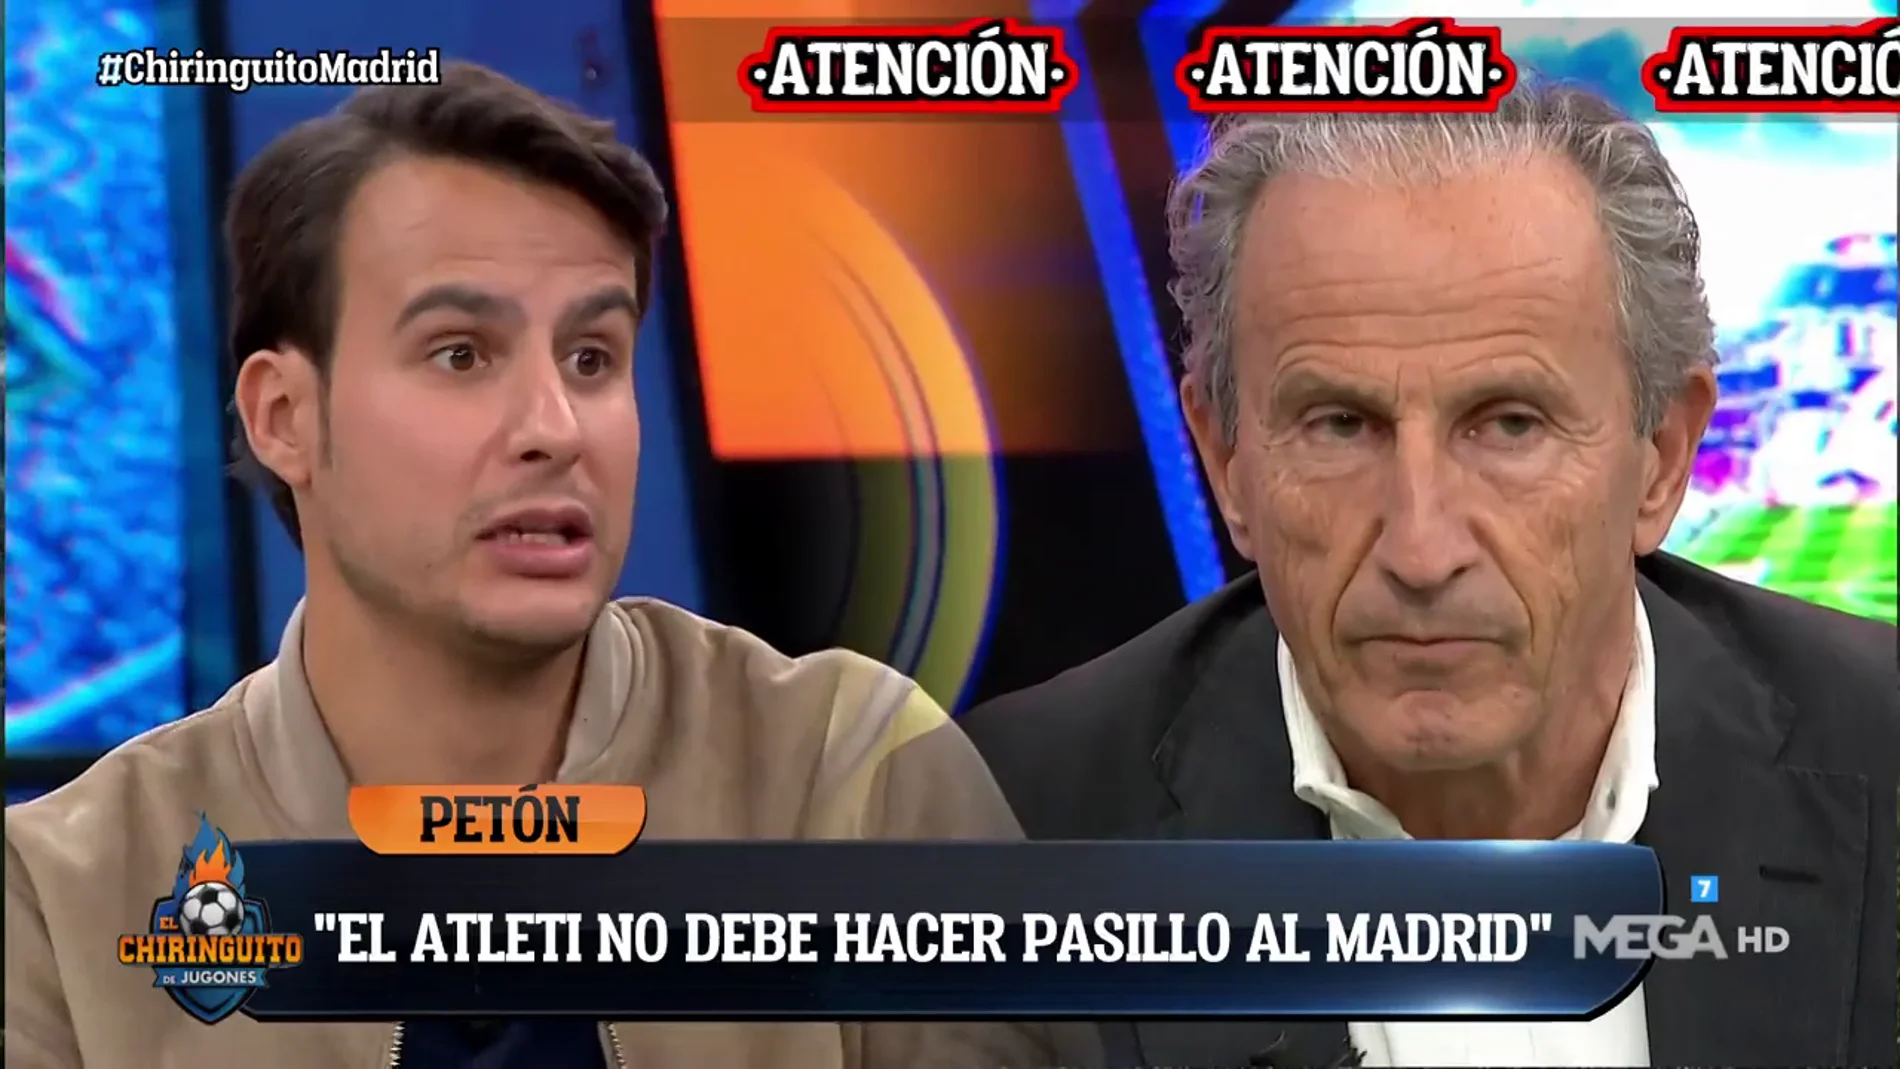 Petón: "El Atleti no debe hacer pasillo al Madrid"